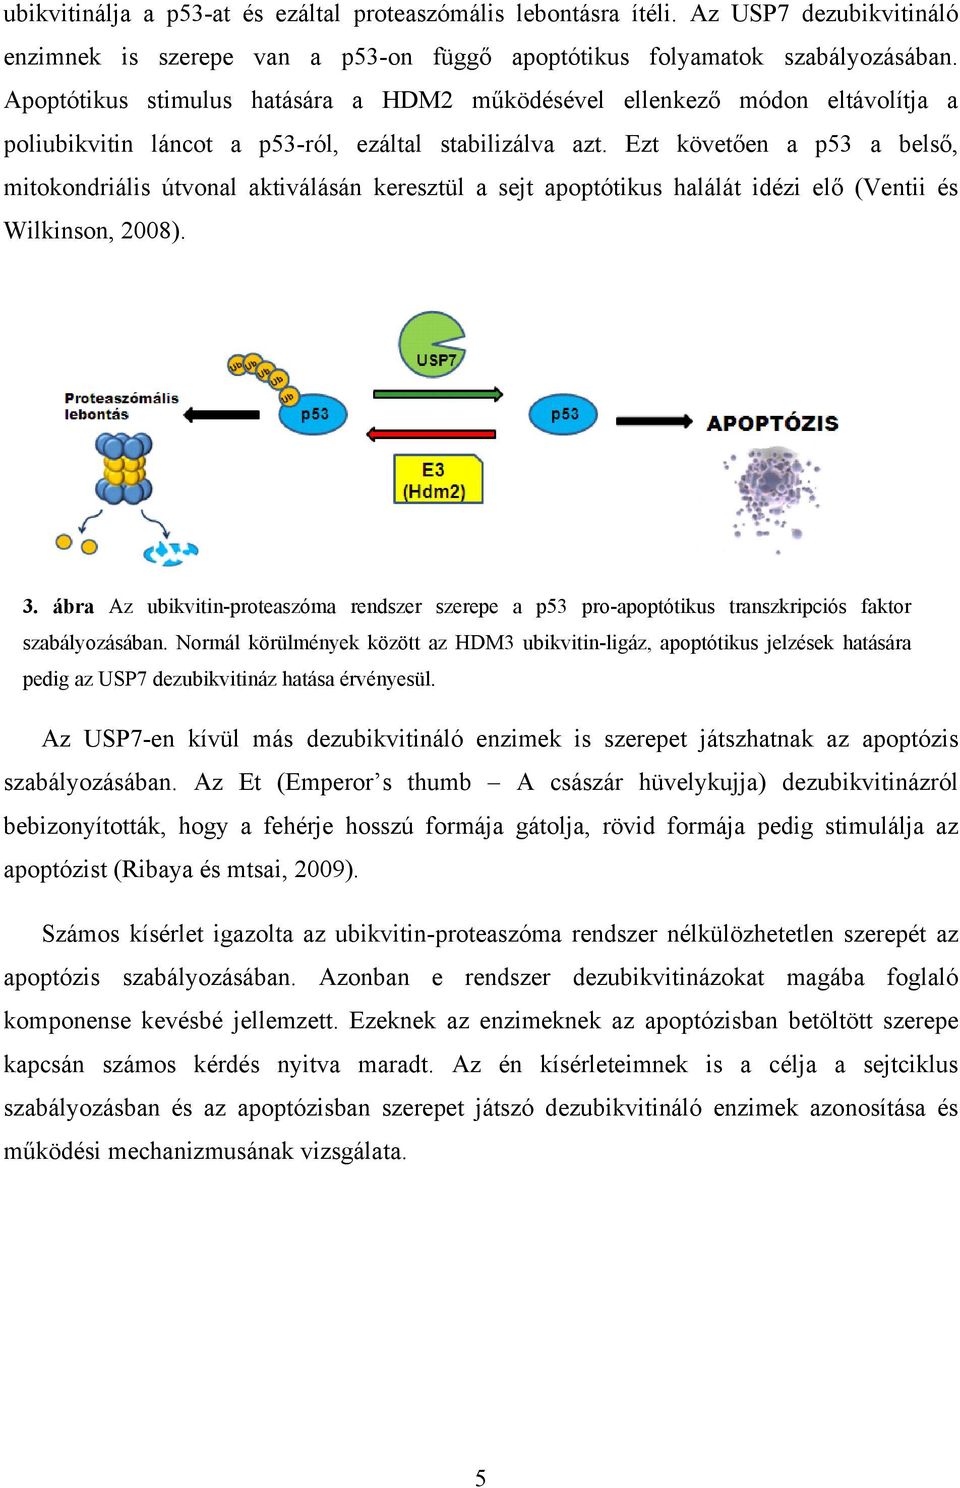 Ezt követően a p53 a belső, mitokondriális útvonal aktiválásán keresztül a sejt apoptótikus halálát idézi elő (Ventii és Wilkinson, 2008). 3.